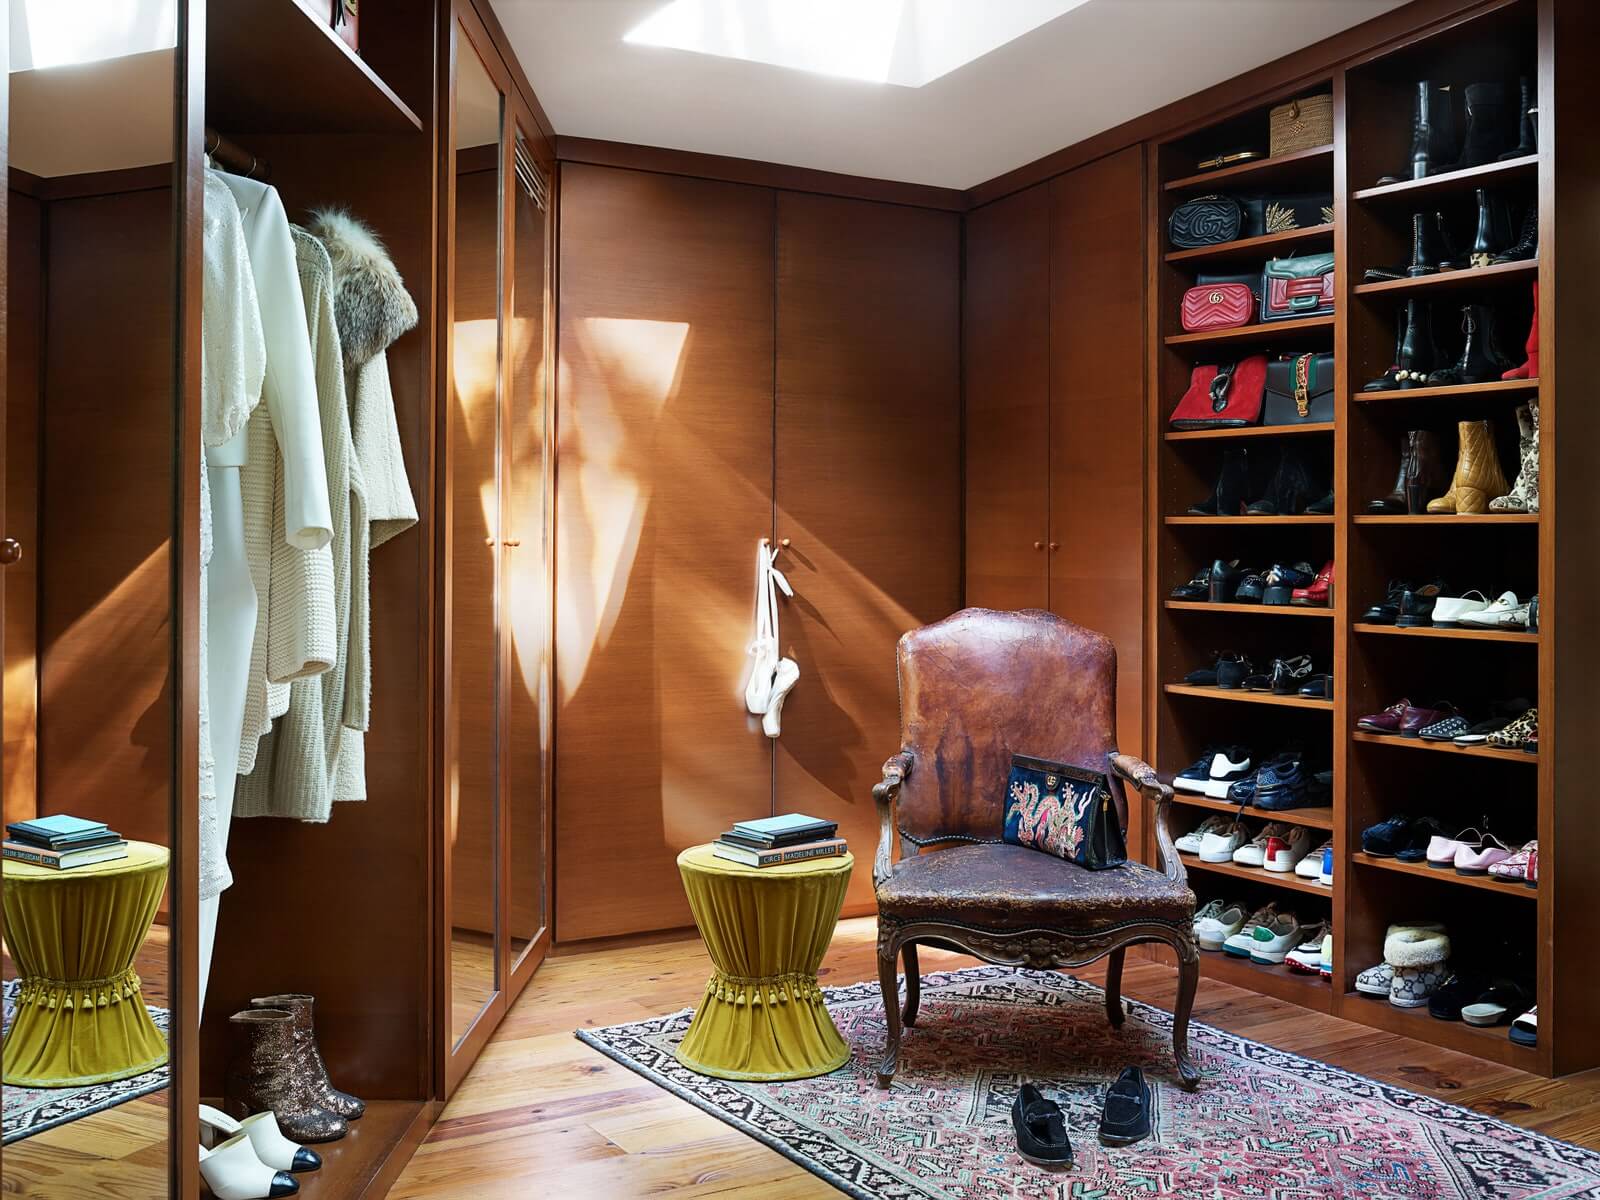 Dakota Johnson Closet - Celebrity closets for closet design ideas